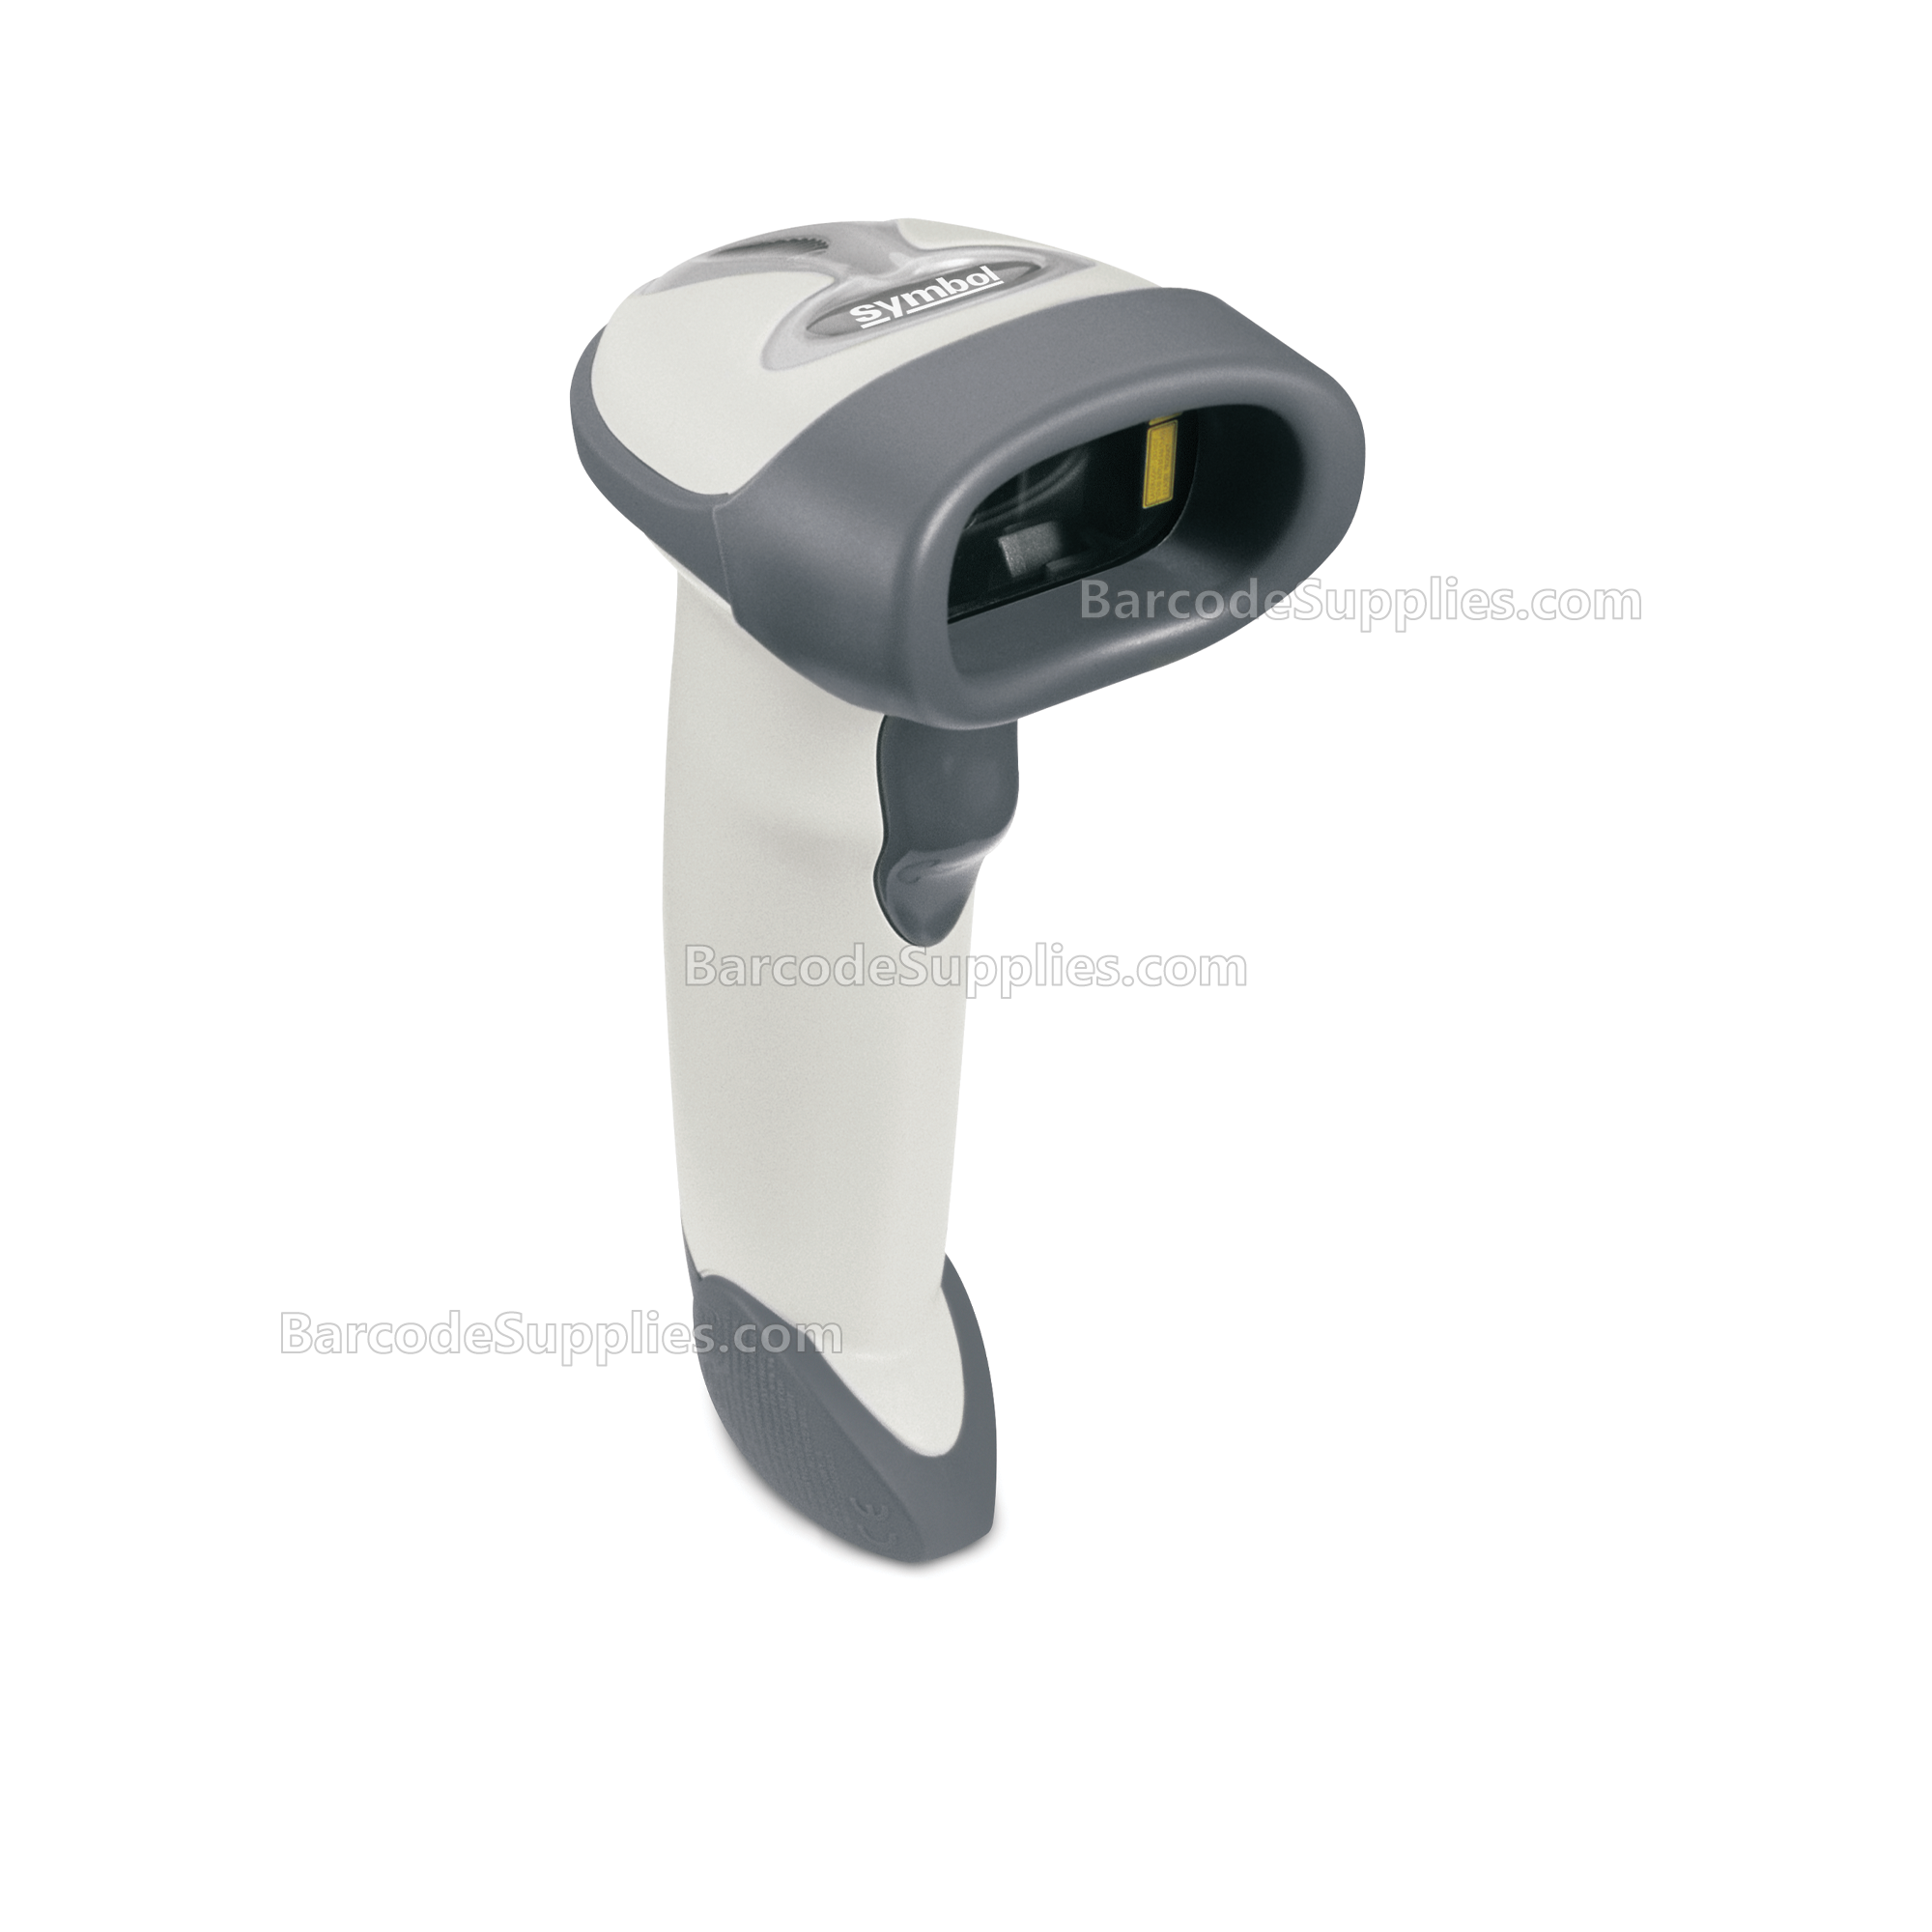 LS2208: Laser Scanner, Standard Range, Corded, Cash Register White - NA ONLY - MPN: LS2208-SR20001NA